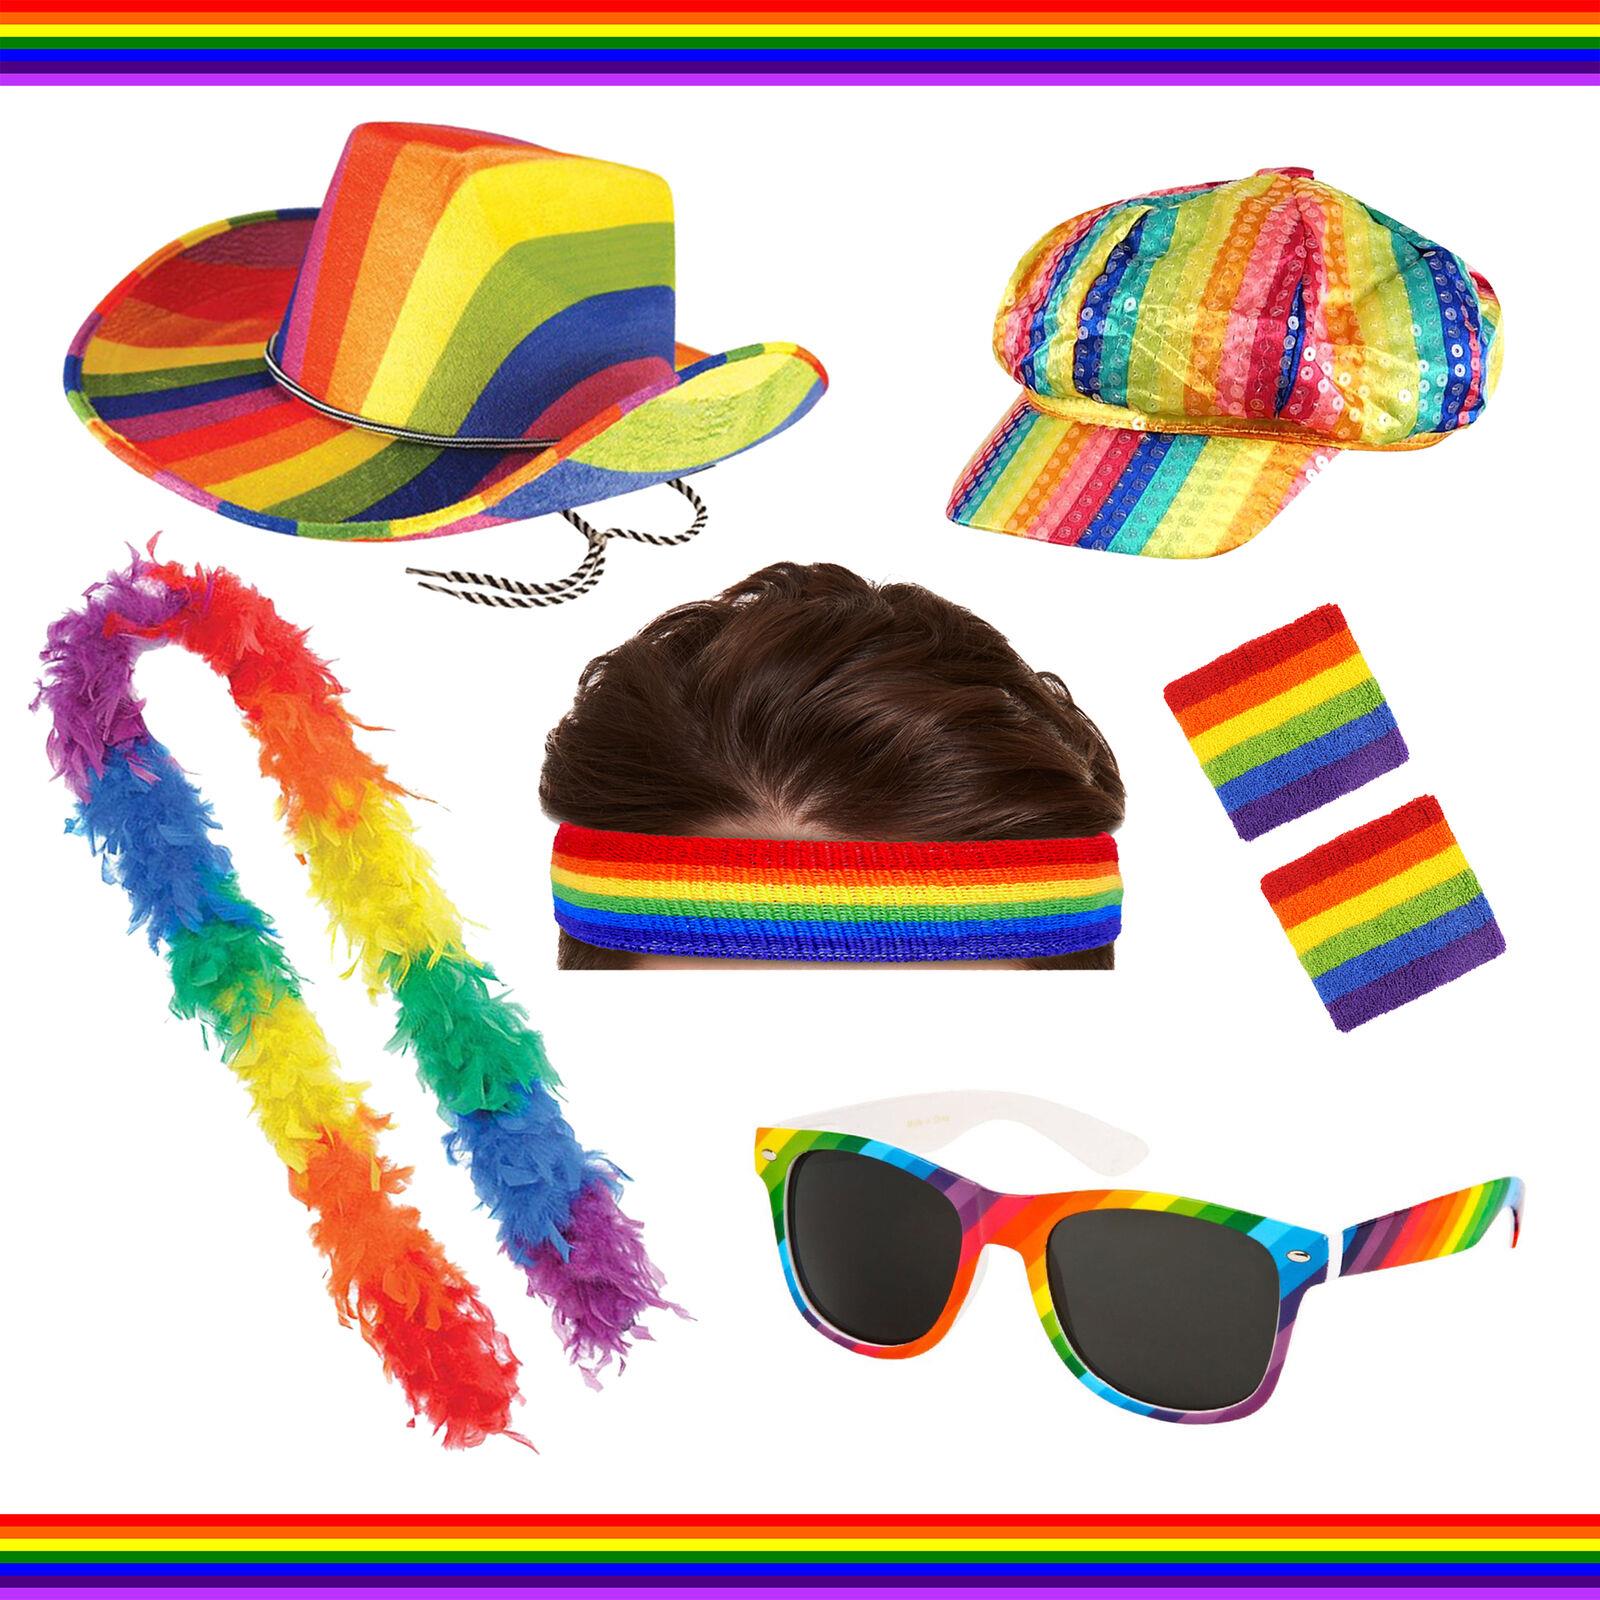 padres gay pride hat sale